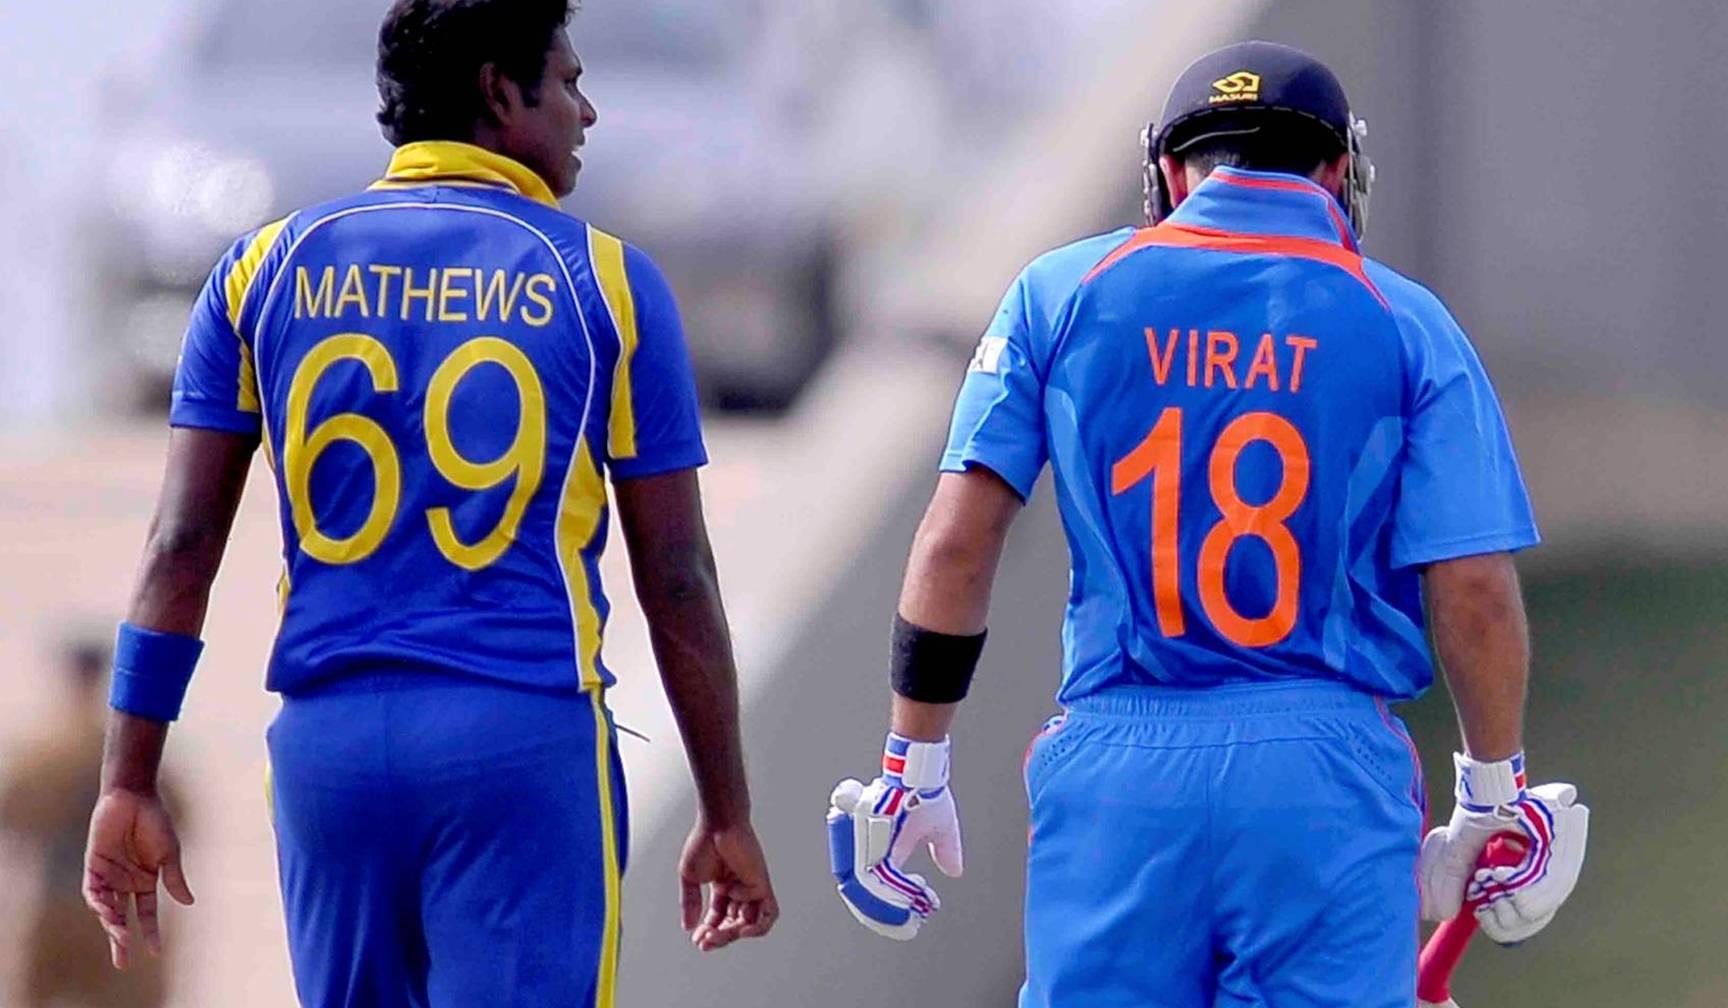 नाम बताएं और जीतें गिफ्ट..श्रीलंका के खिलाफ भारत की Playing 11 टीम में कौन-कौन खिलाड़ी है शामिल? कमेंट में दें अपने जवाब